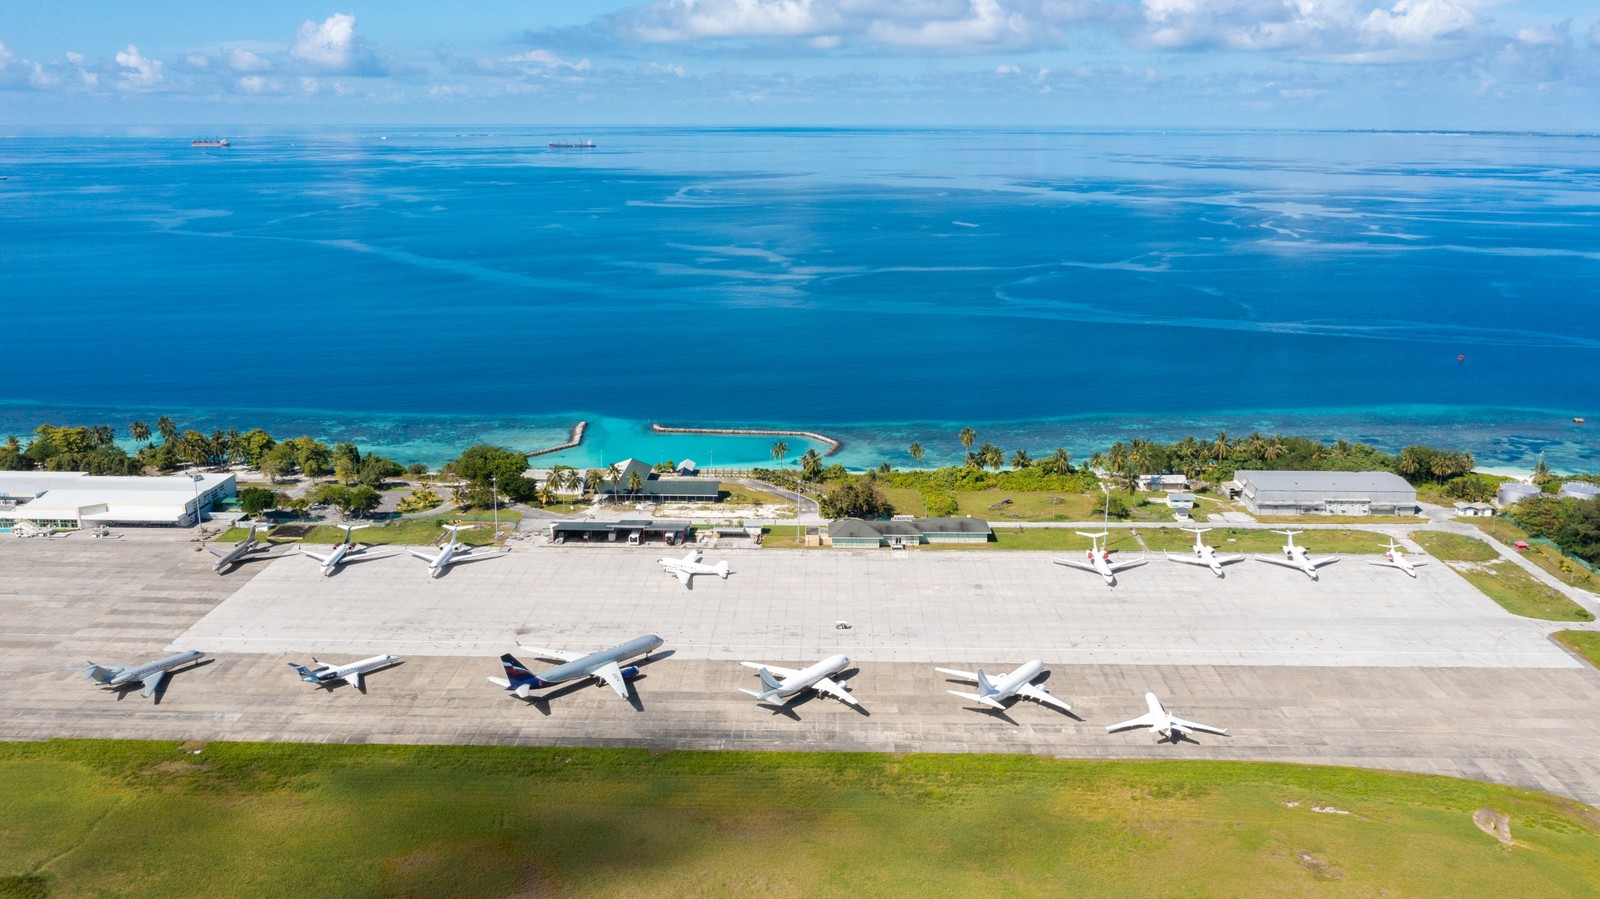 O Aeroporto Internacional de Gan, segundo maior das Ilhas Maldivas, também fica de frente para o marReprodução